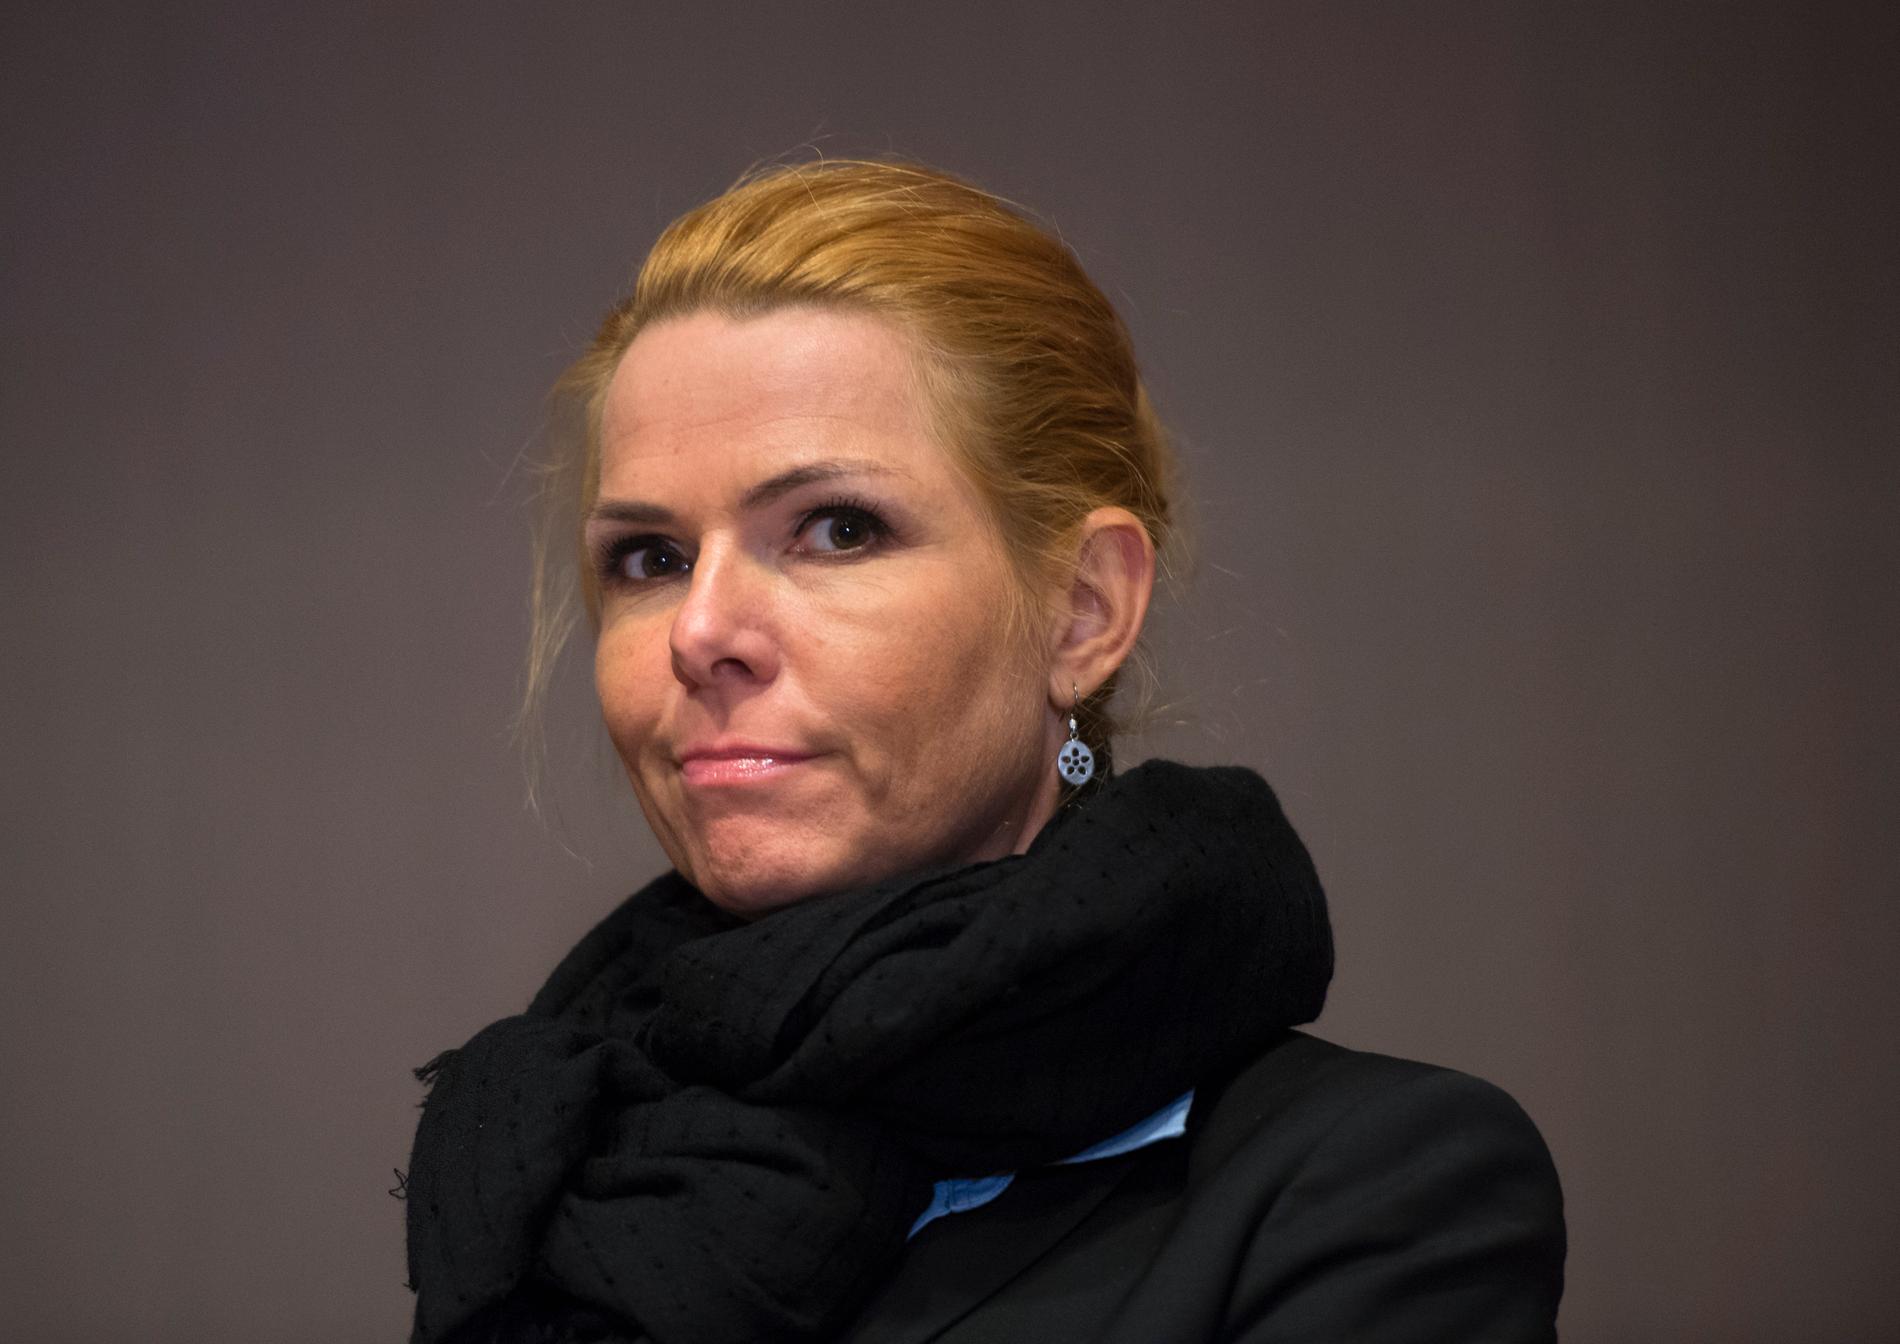 Danmarks utlännings- och integrationsminister Inger Støjberg.